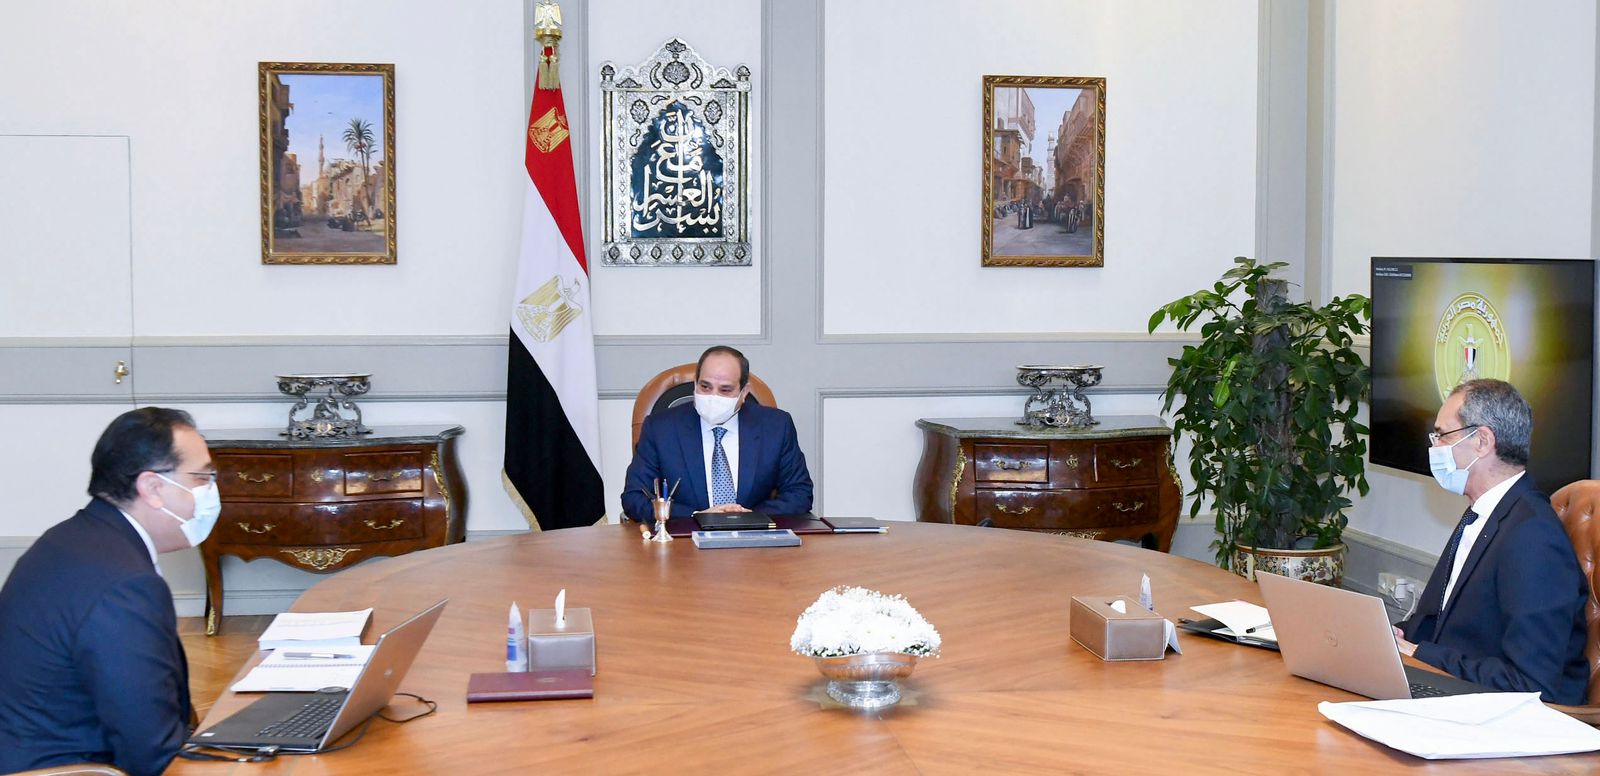 وزير الاتصالات يعرض تطورات مبادرة ;مصر الرقمية; ومنظومة الامتحانات وميكنة المستشفيات الجامعية